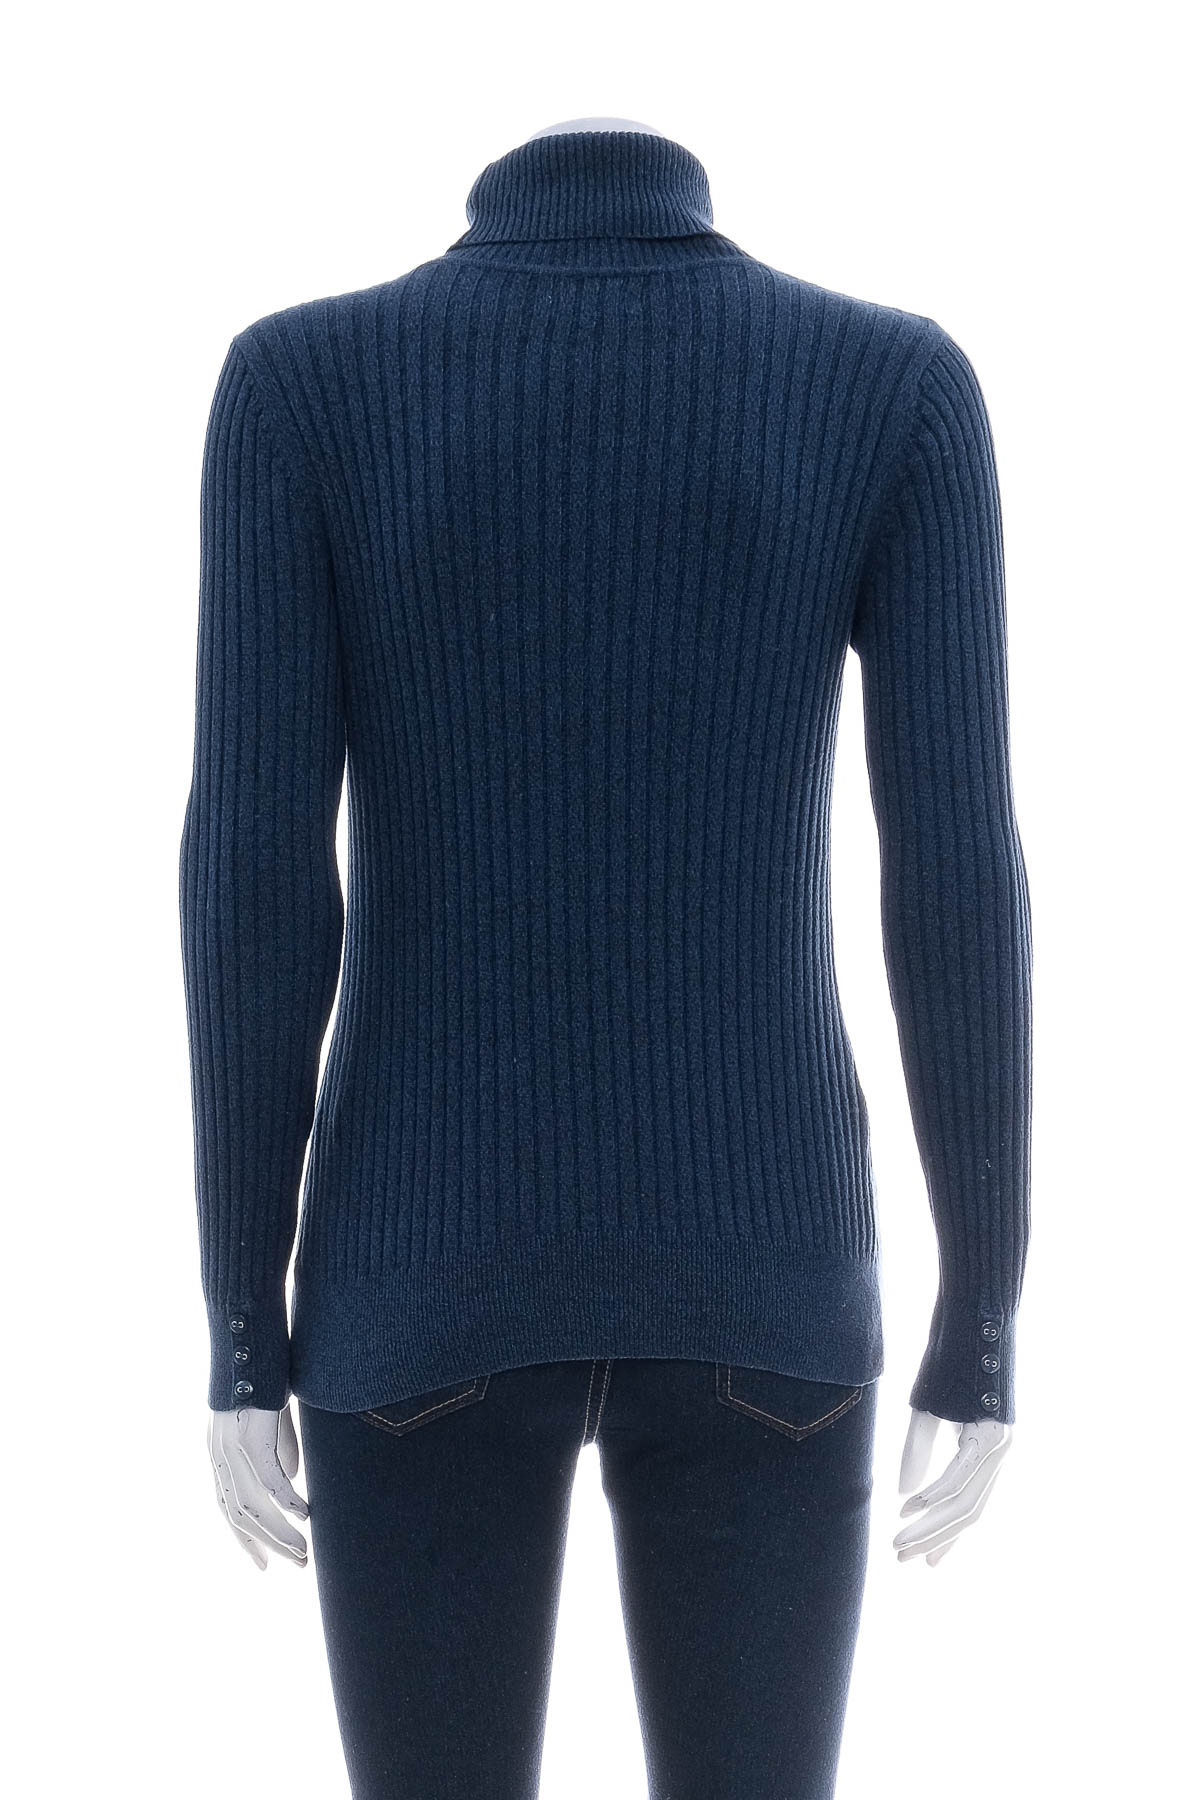 Women's sweater - Croft & Barrow - 1